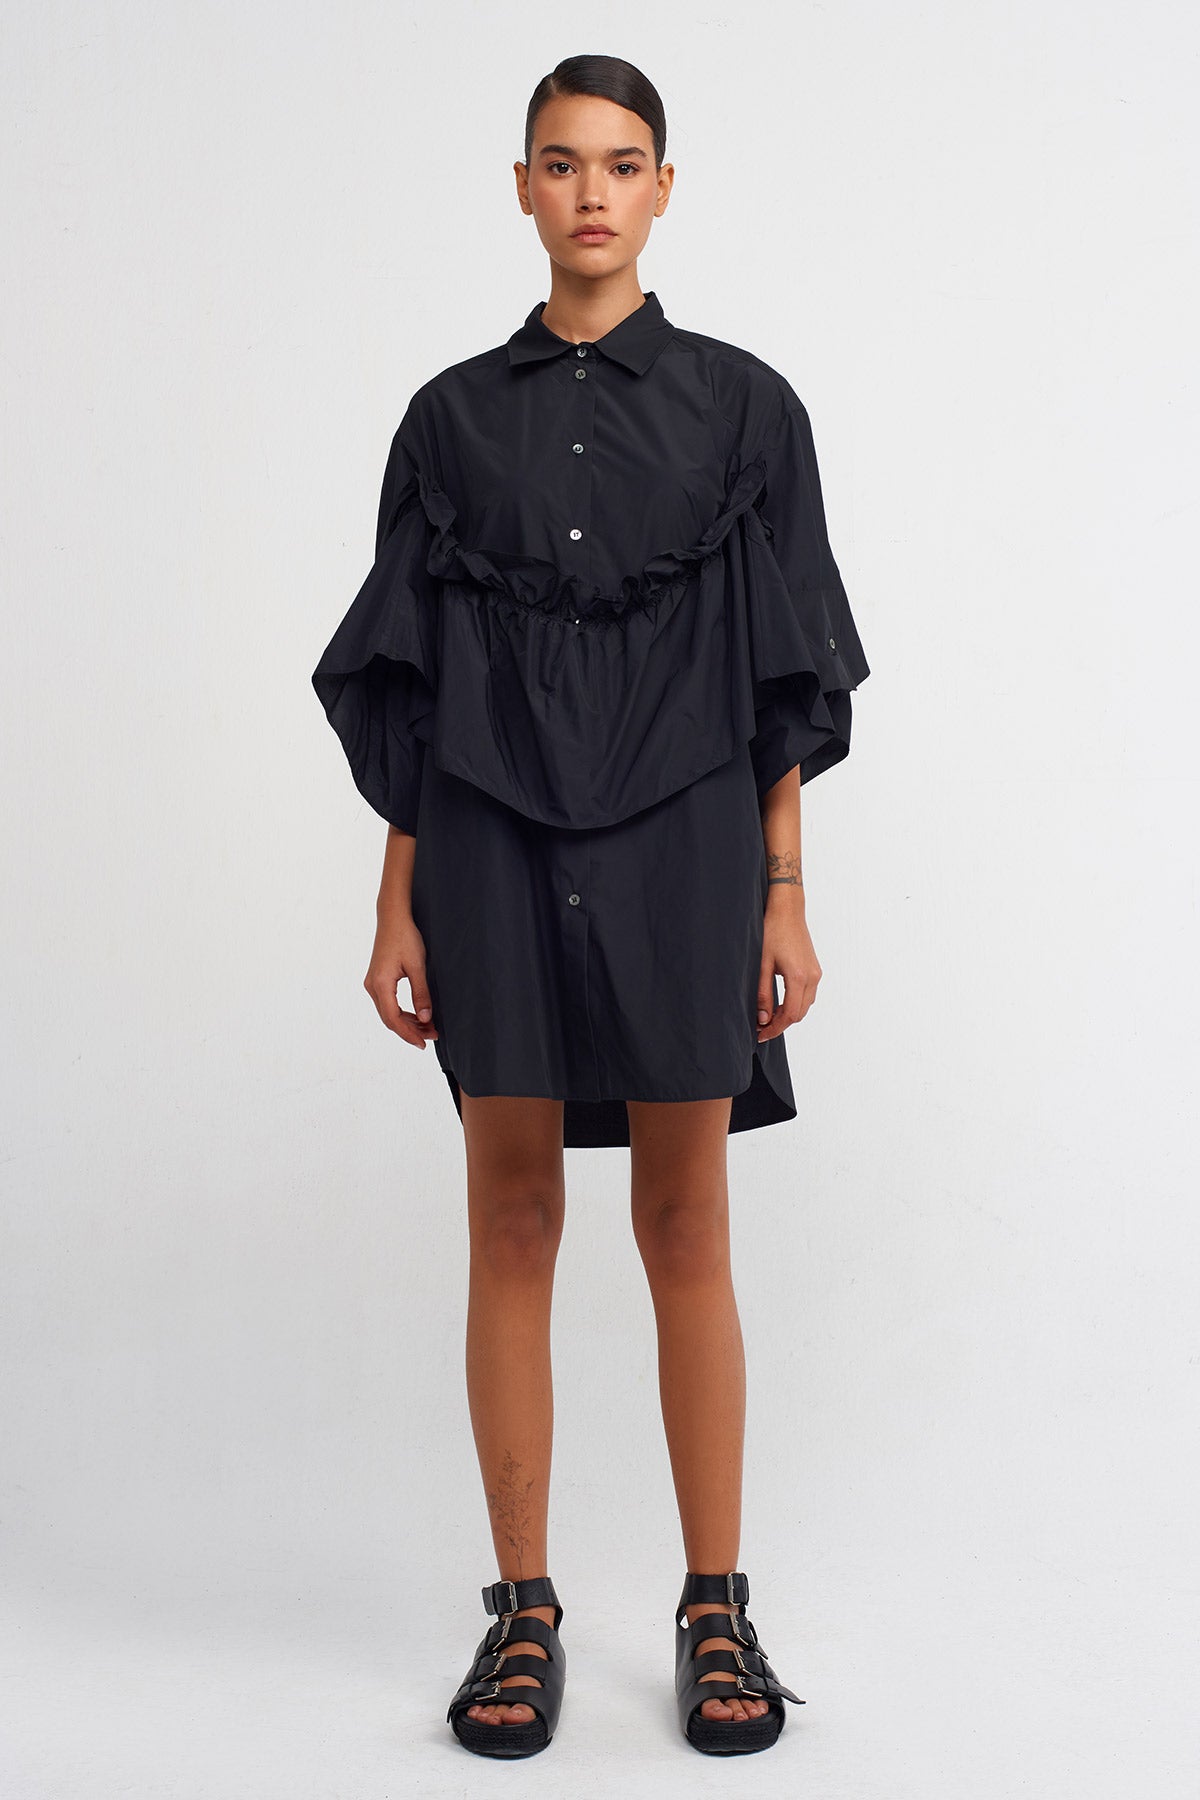 Black Taffeta Shirt Dress-Y244014050